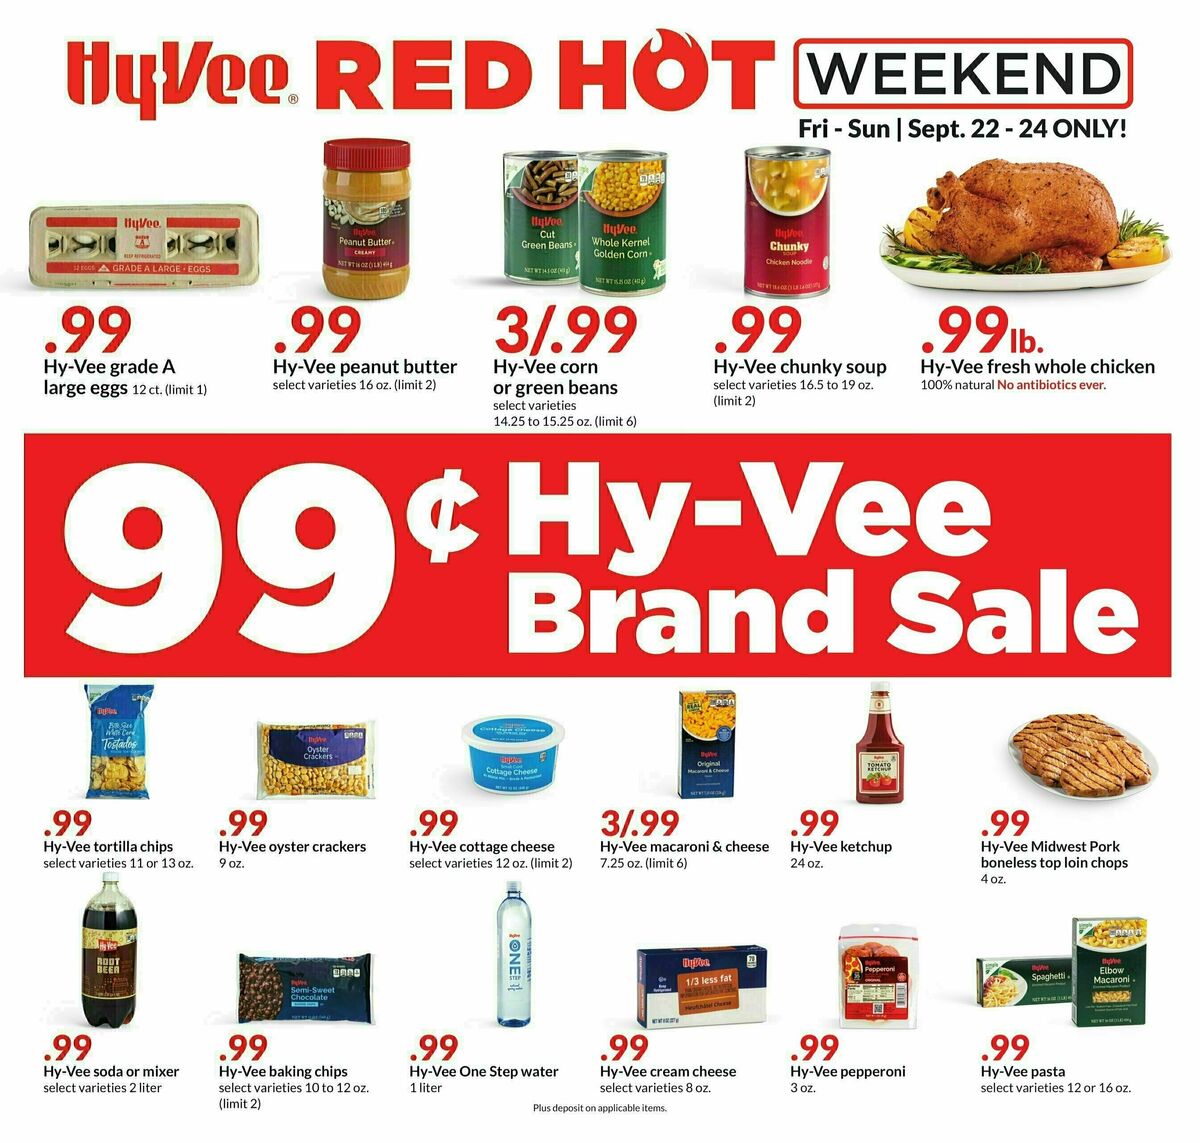 Hy-Vee Weekend Sale Weekly Ad from September 22